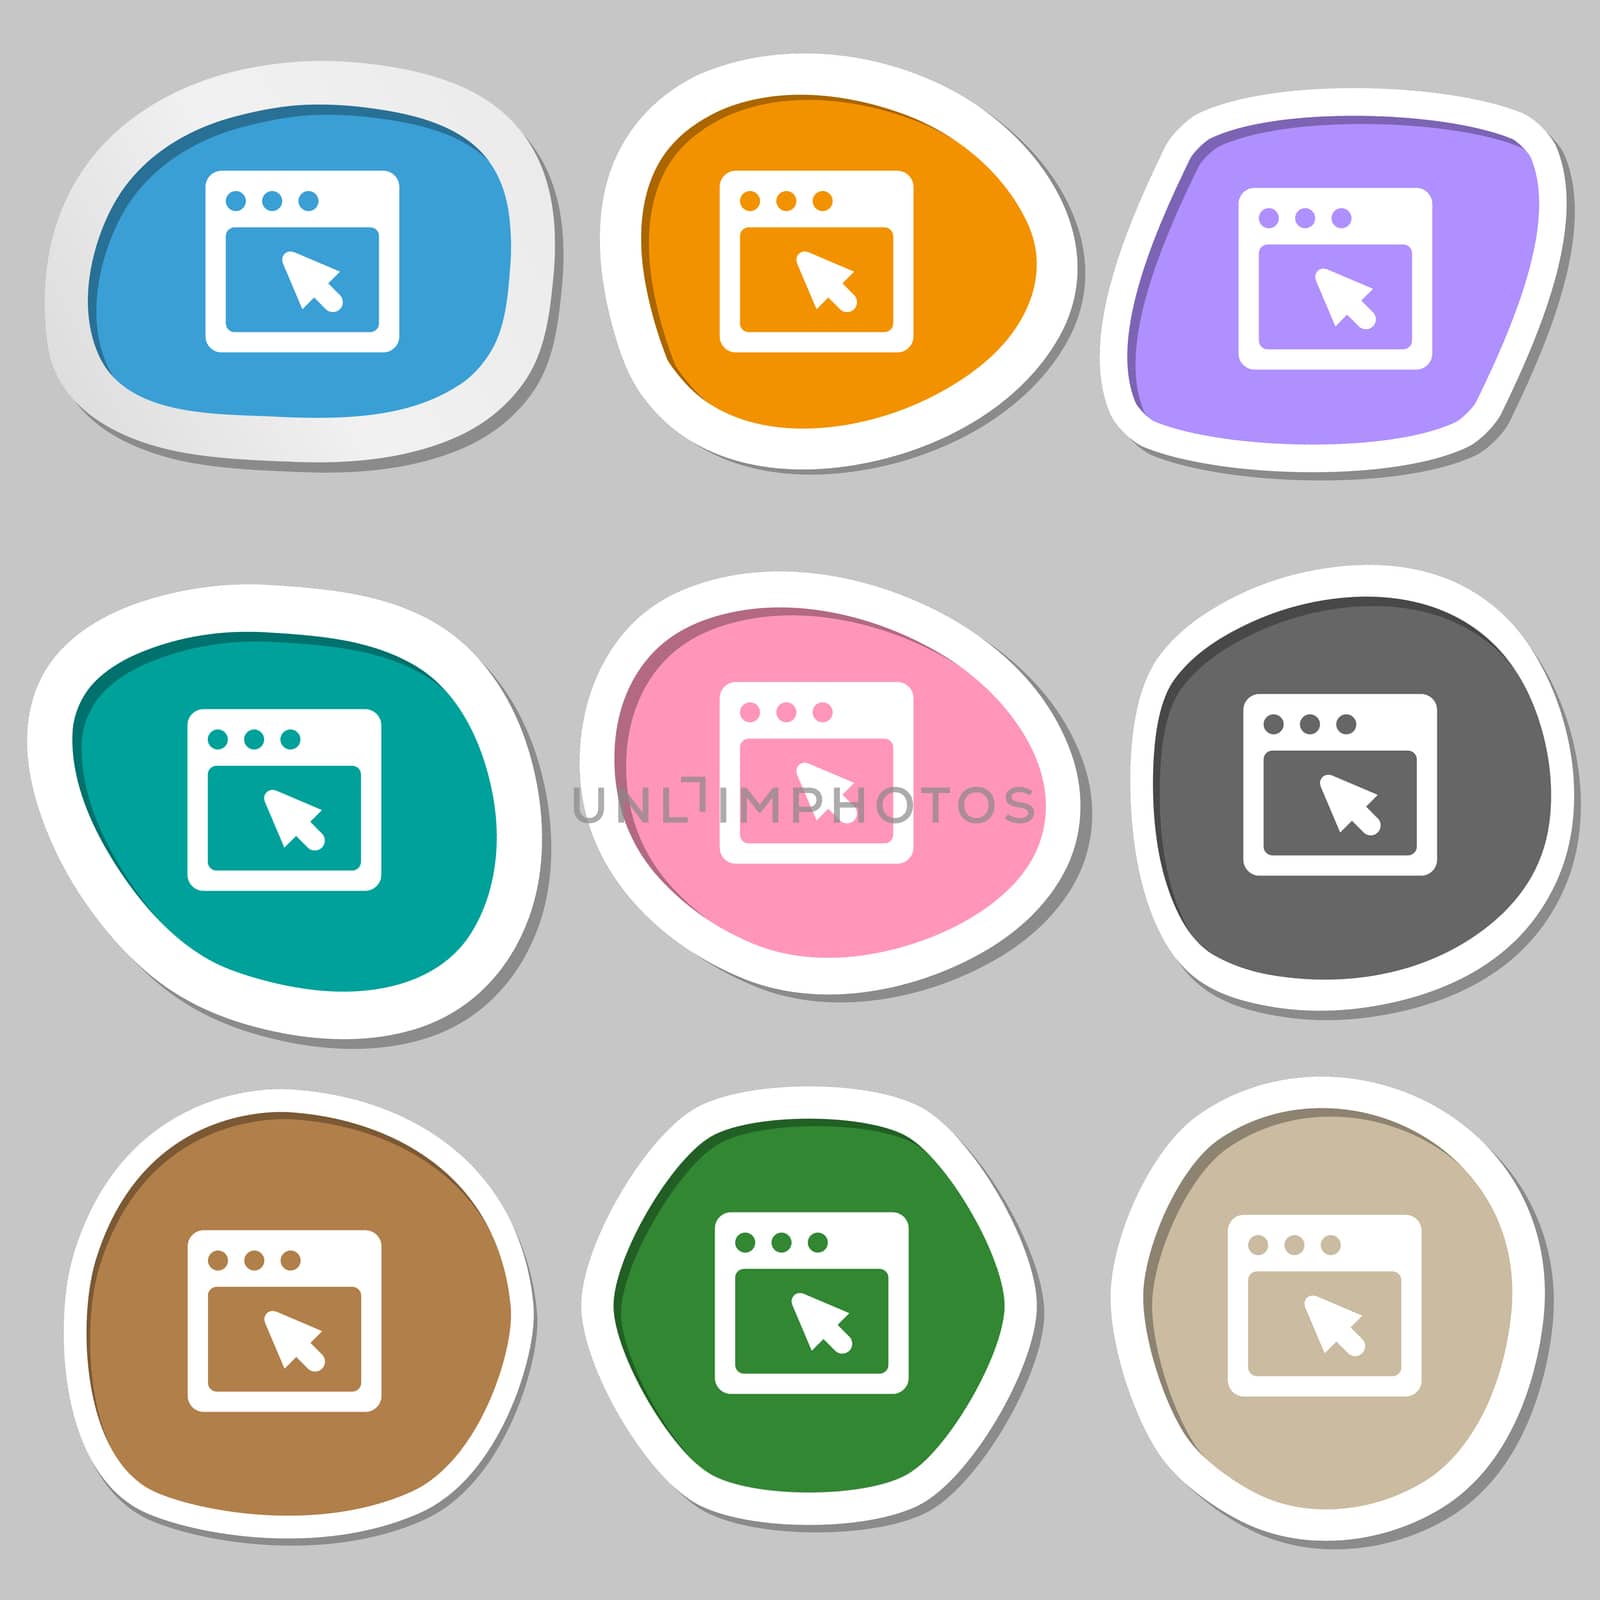 the dialog box icon symbols. Multicolored paper stickers. illustration